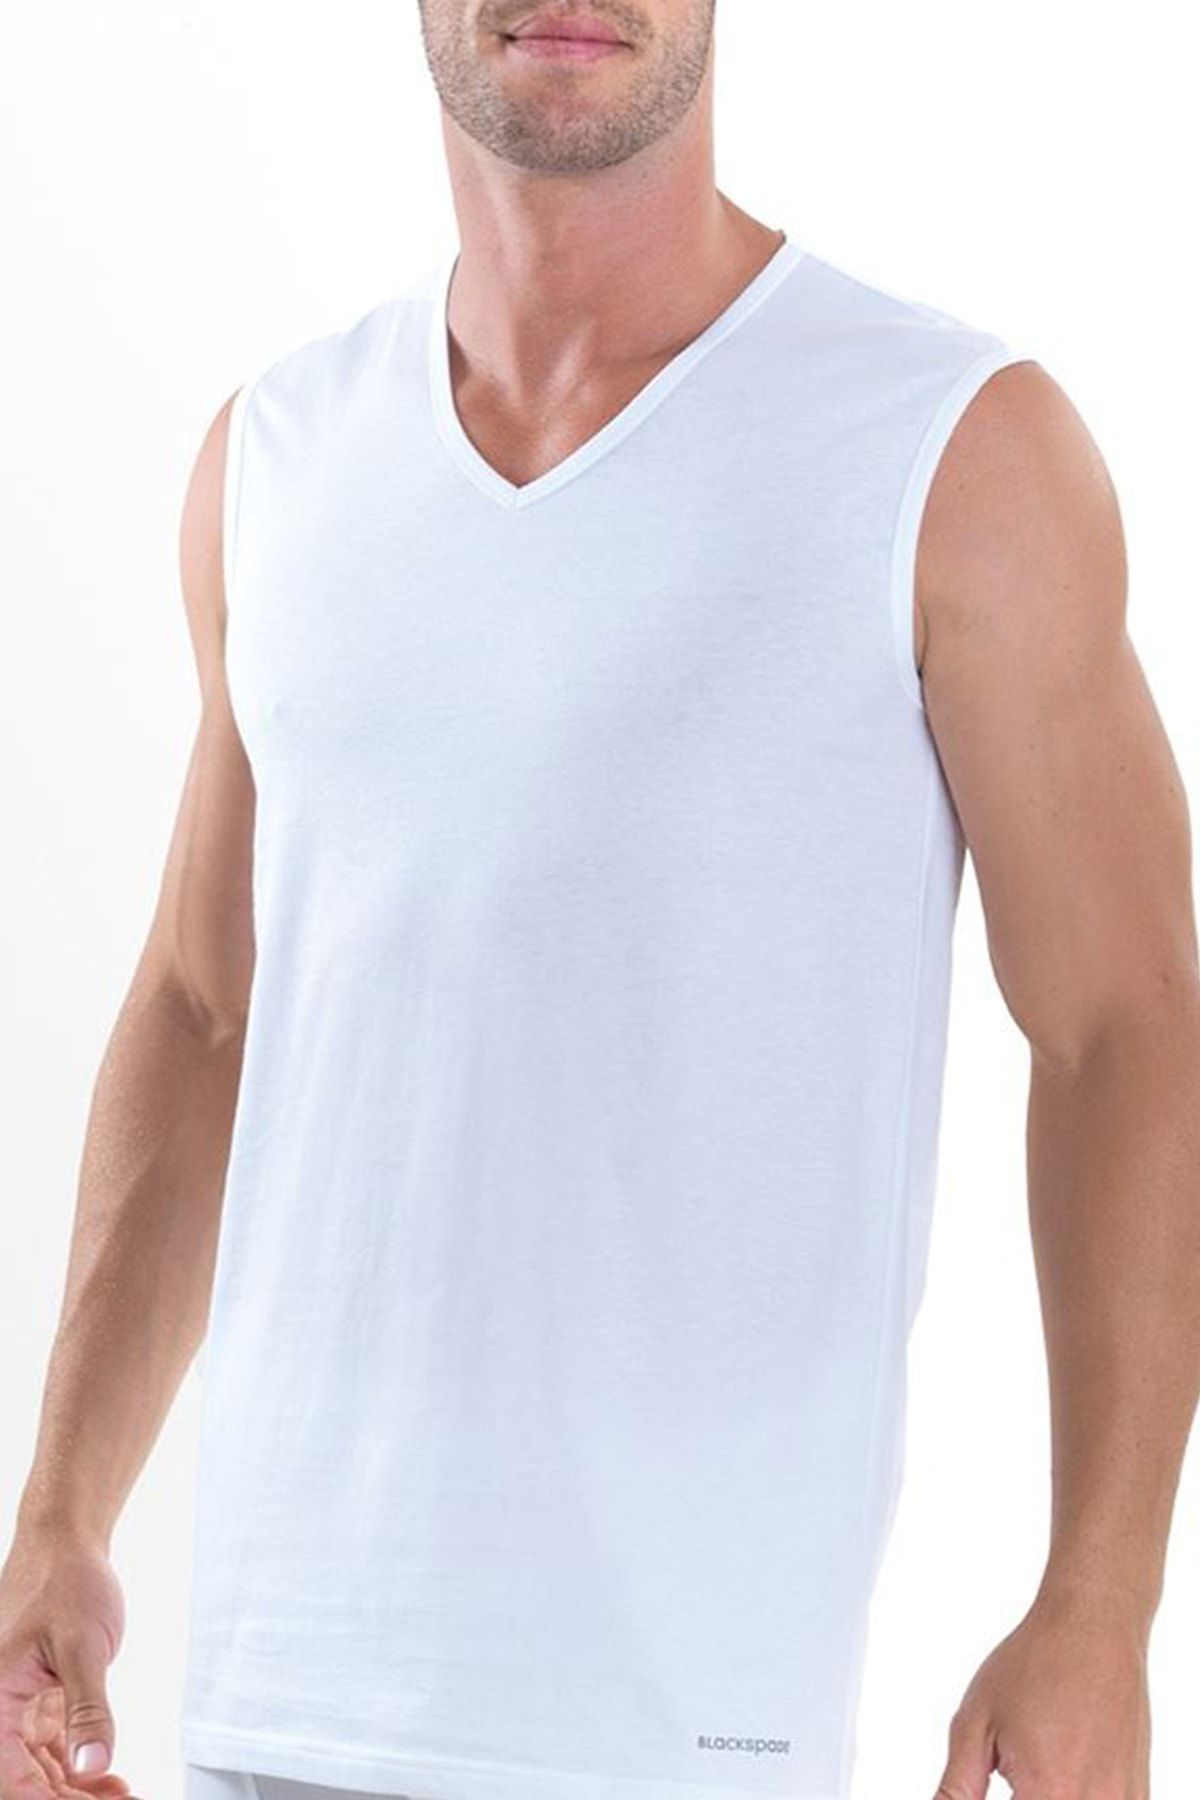 Blackspade Erkek V-yaka Shirt Comfort 9215 - Beyaz